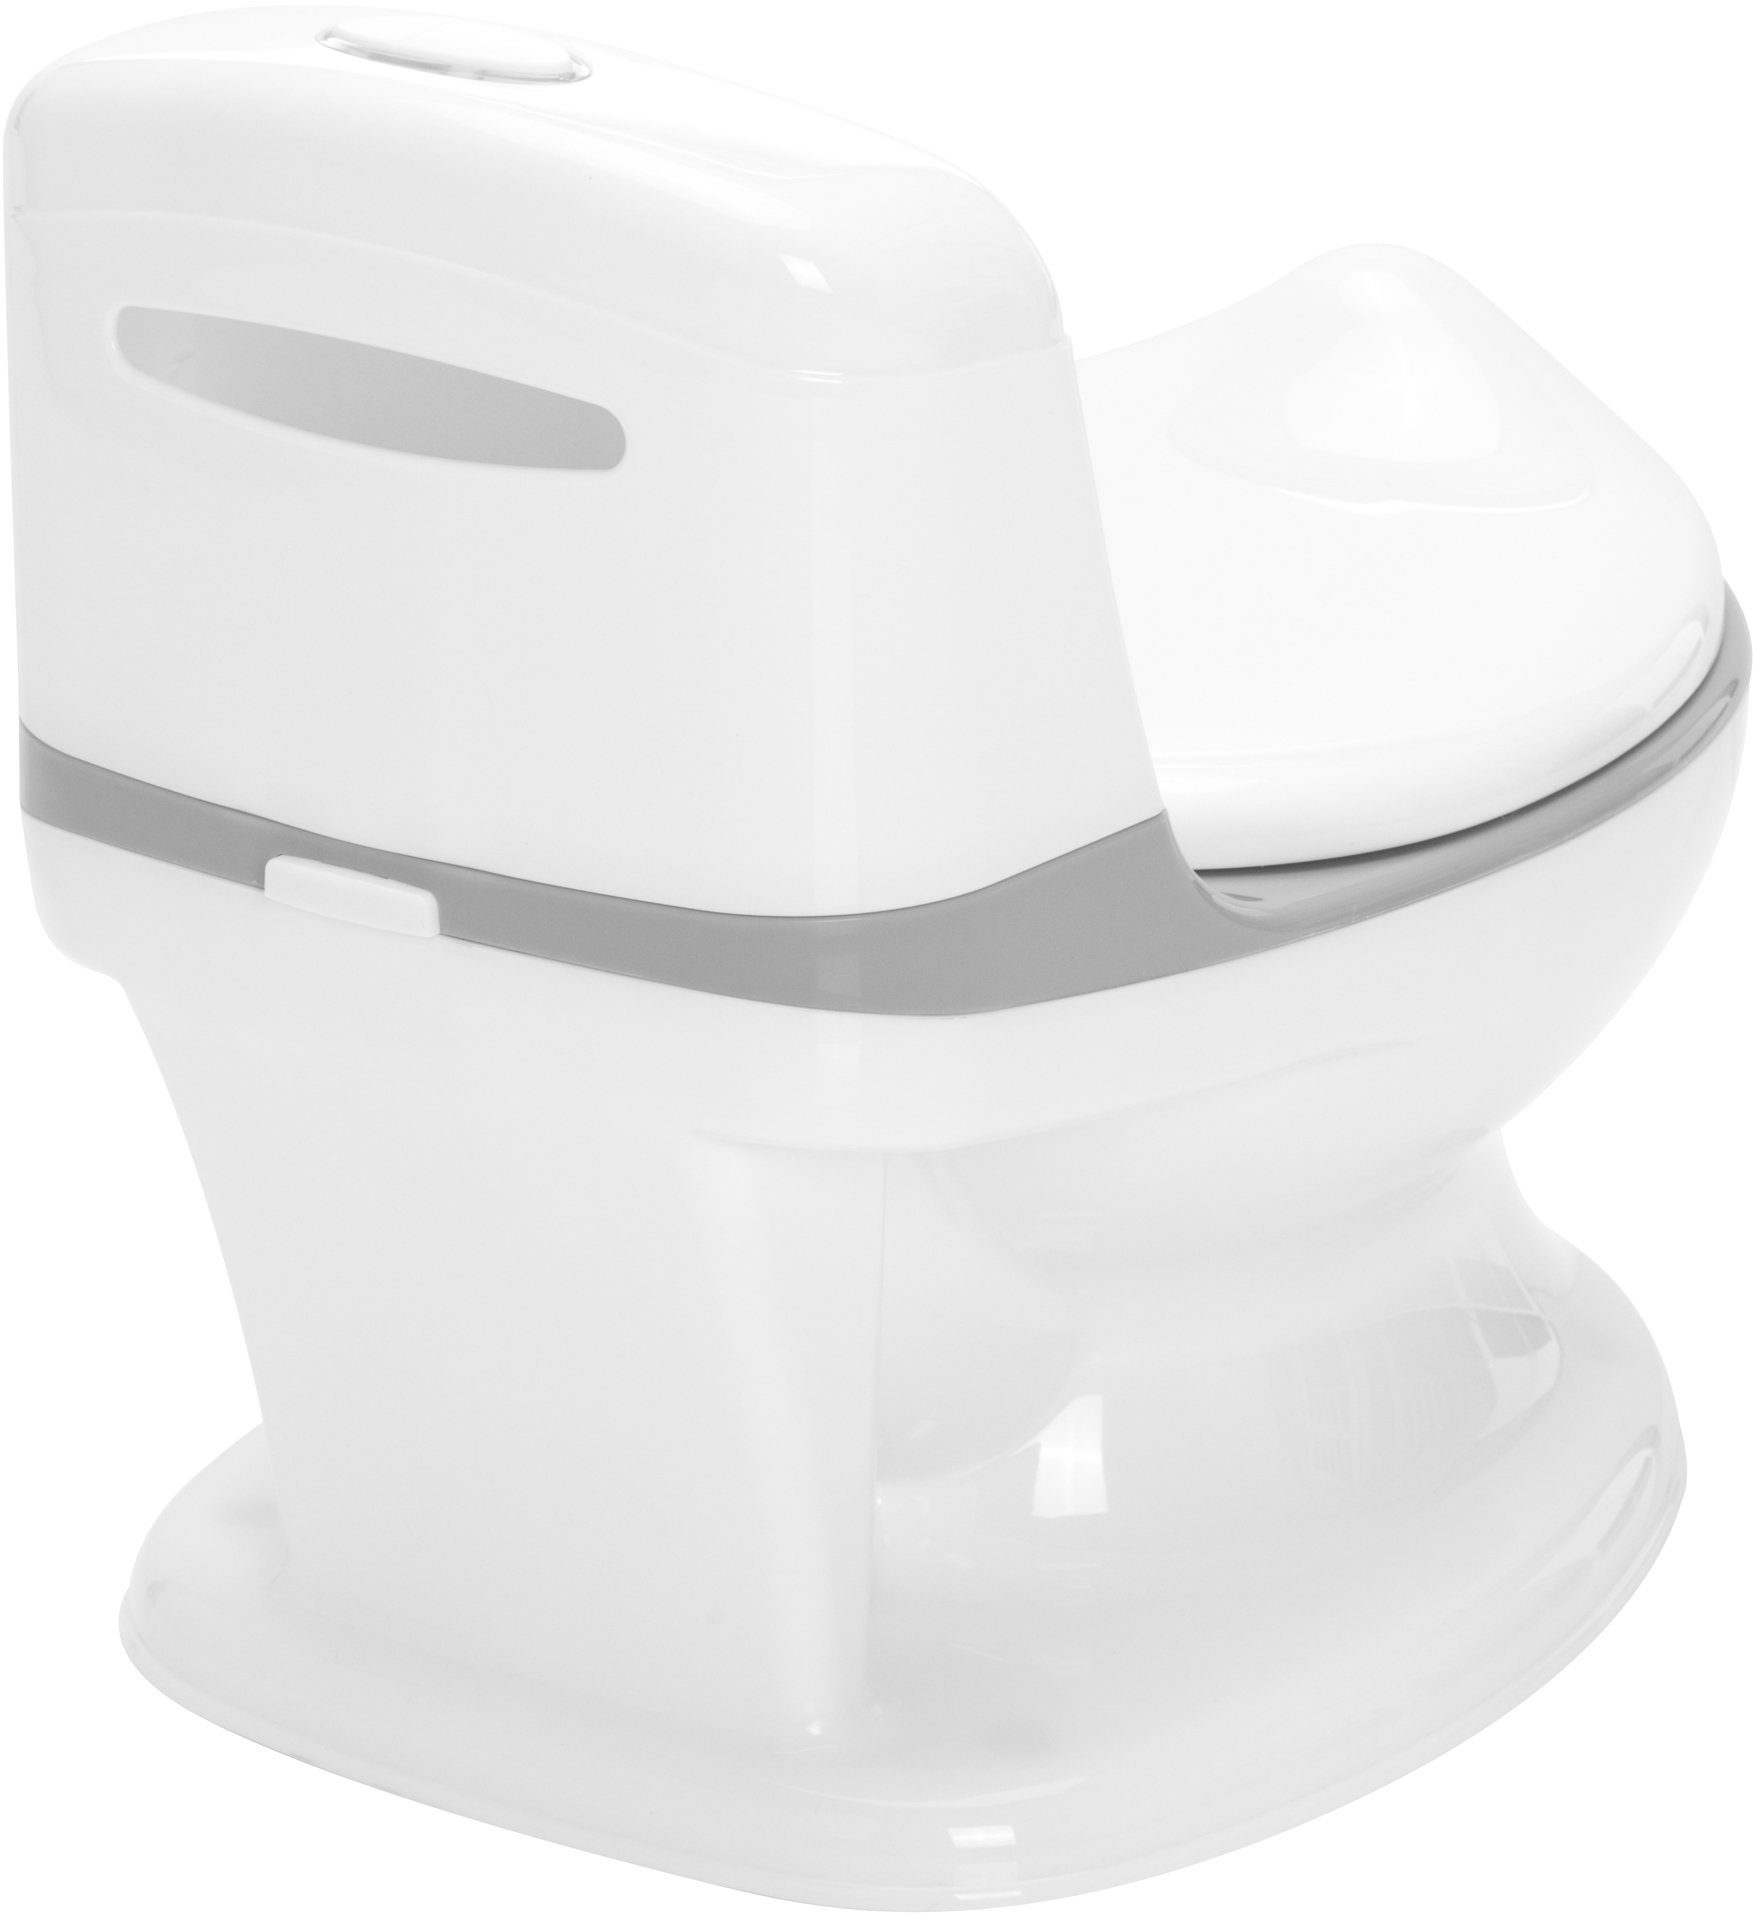 Lichteffekte Toilette, inkl. und weiß/grau, Fillikid Töpfchen Sound- Mini